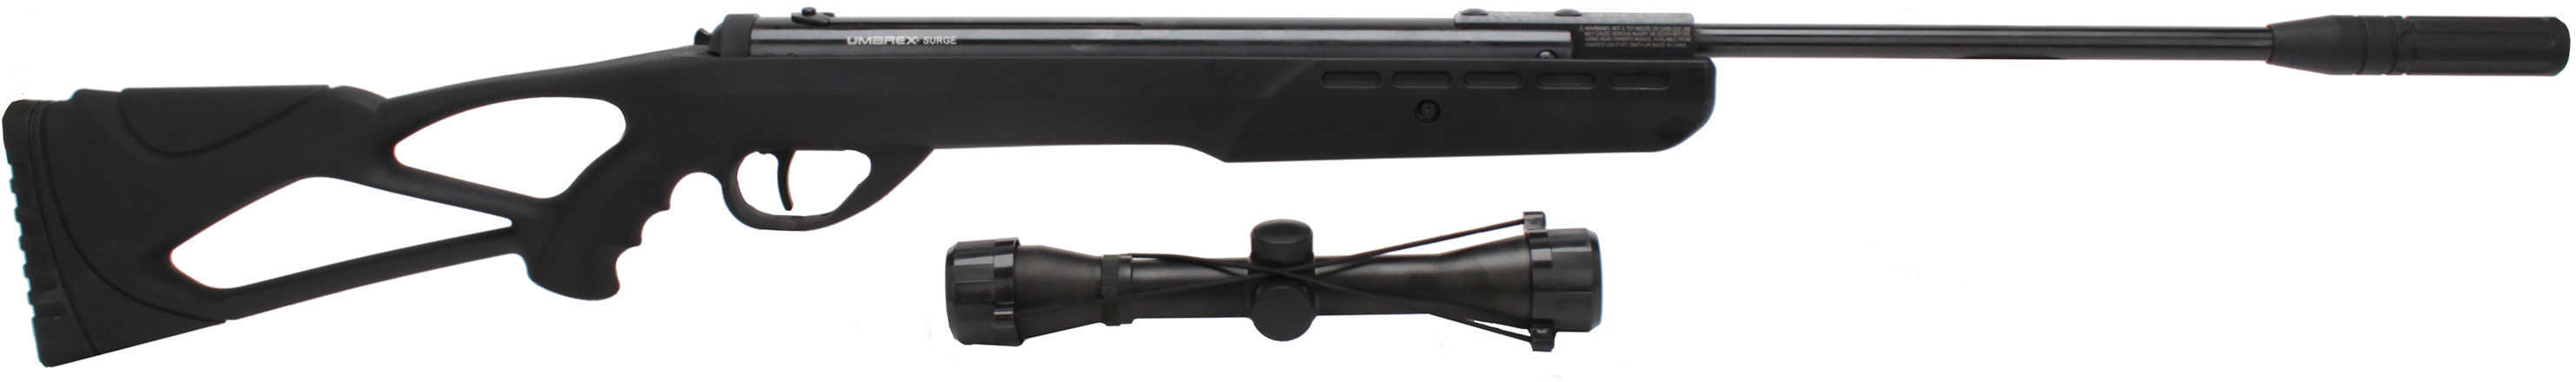 Umarex USA Surge Combo .177 Air Rifle W/ 4X32MM Air-Gun Scope